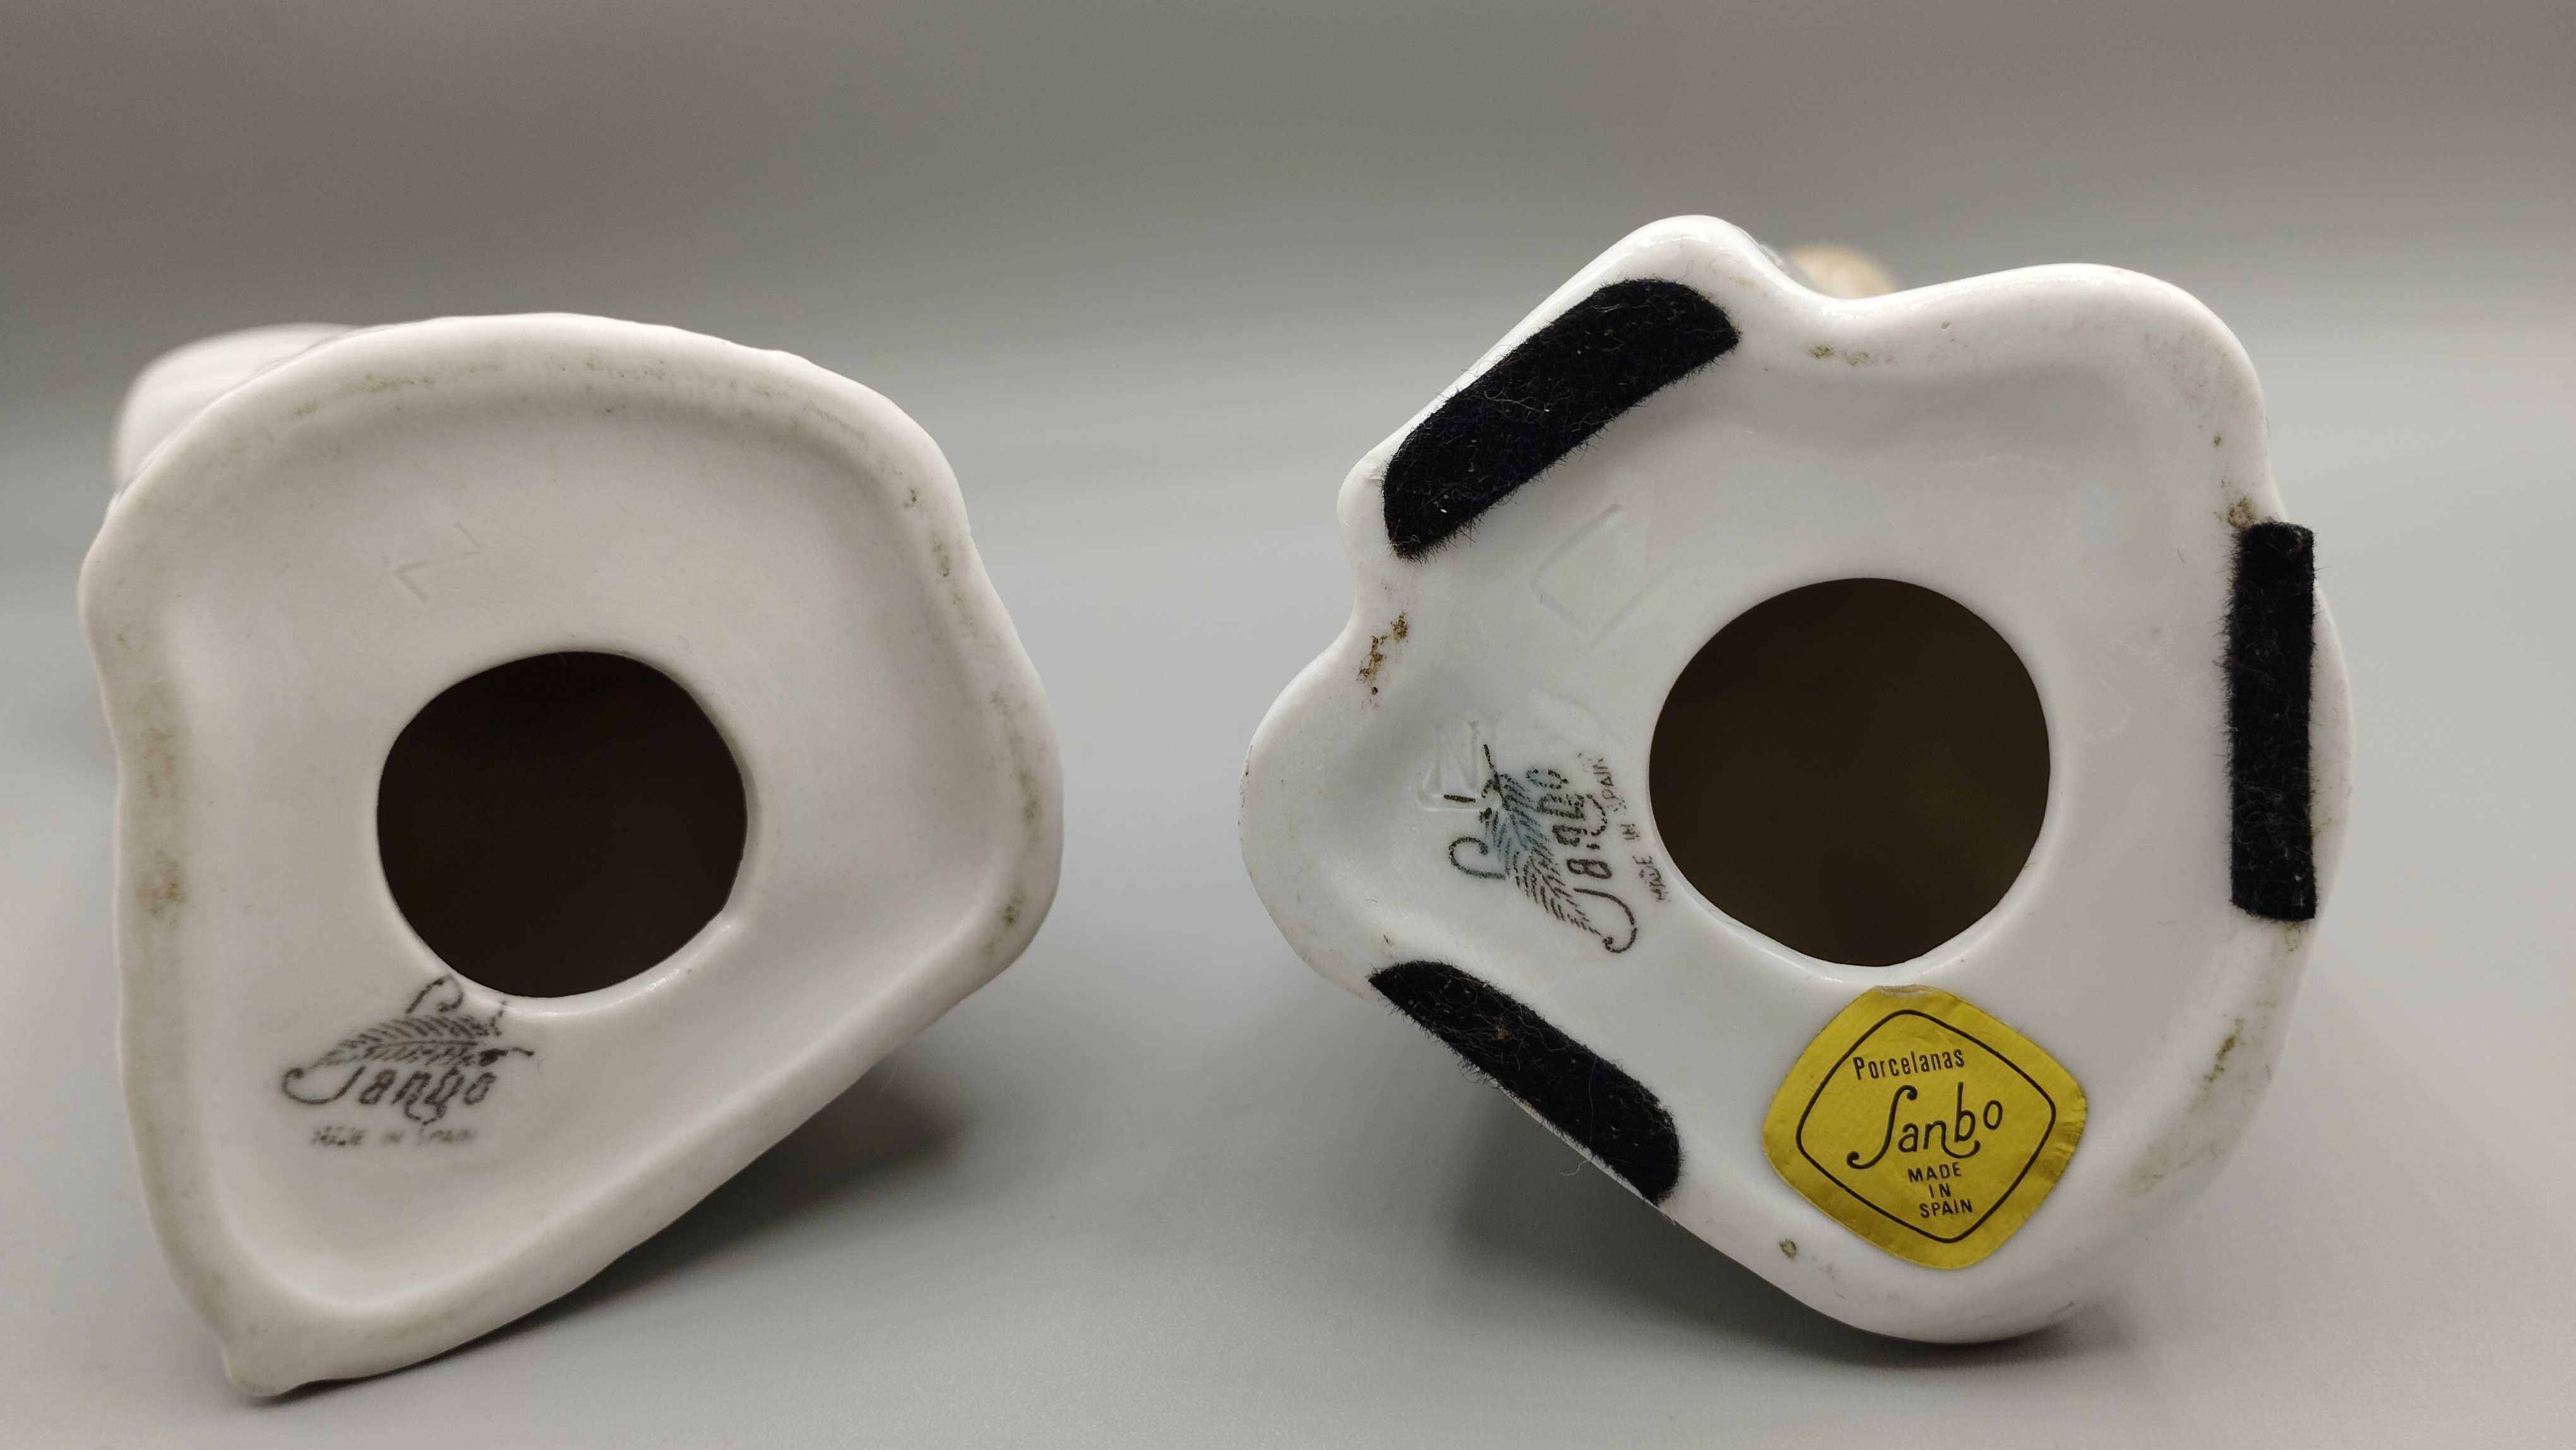 2 Bonecas em cerâmica da marca Sambo - Espanha